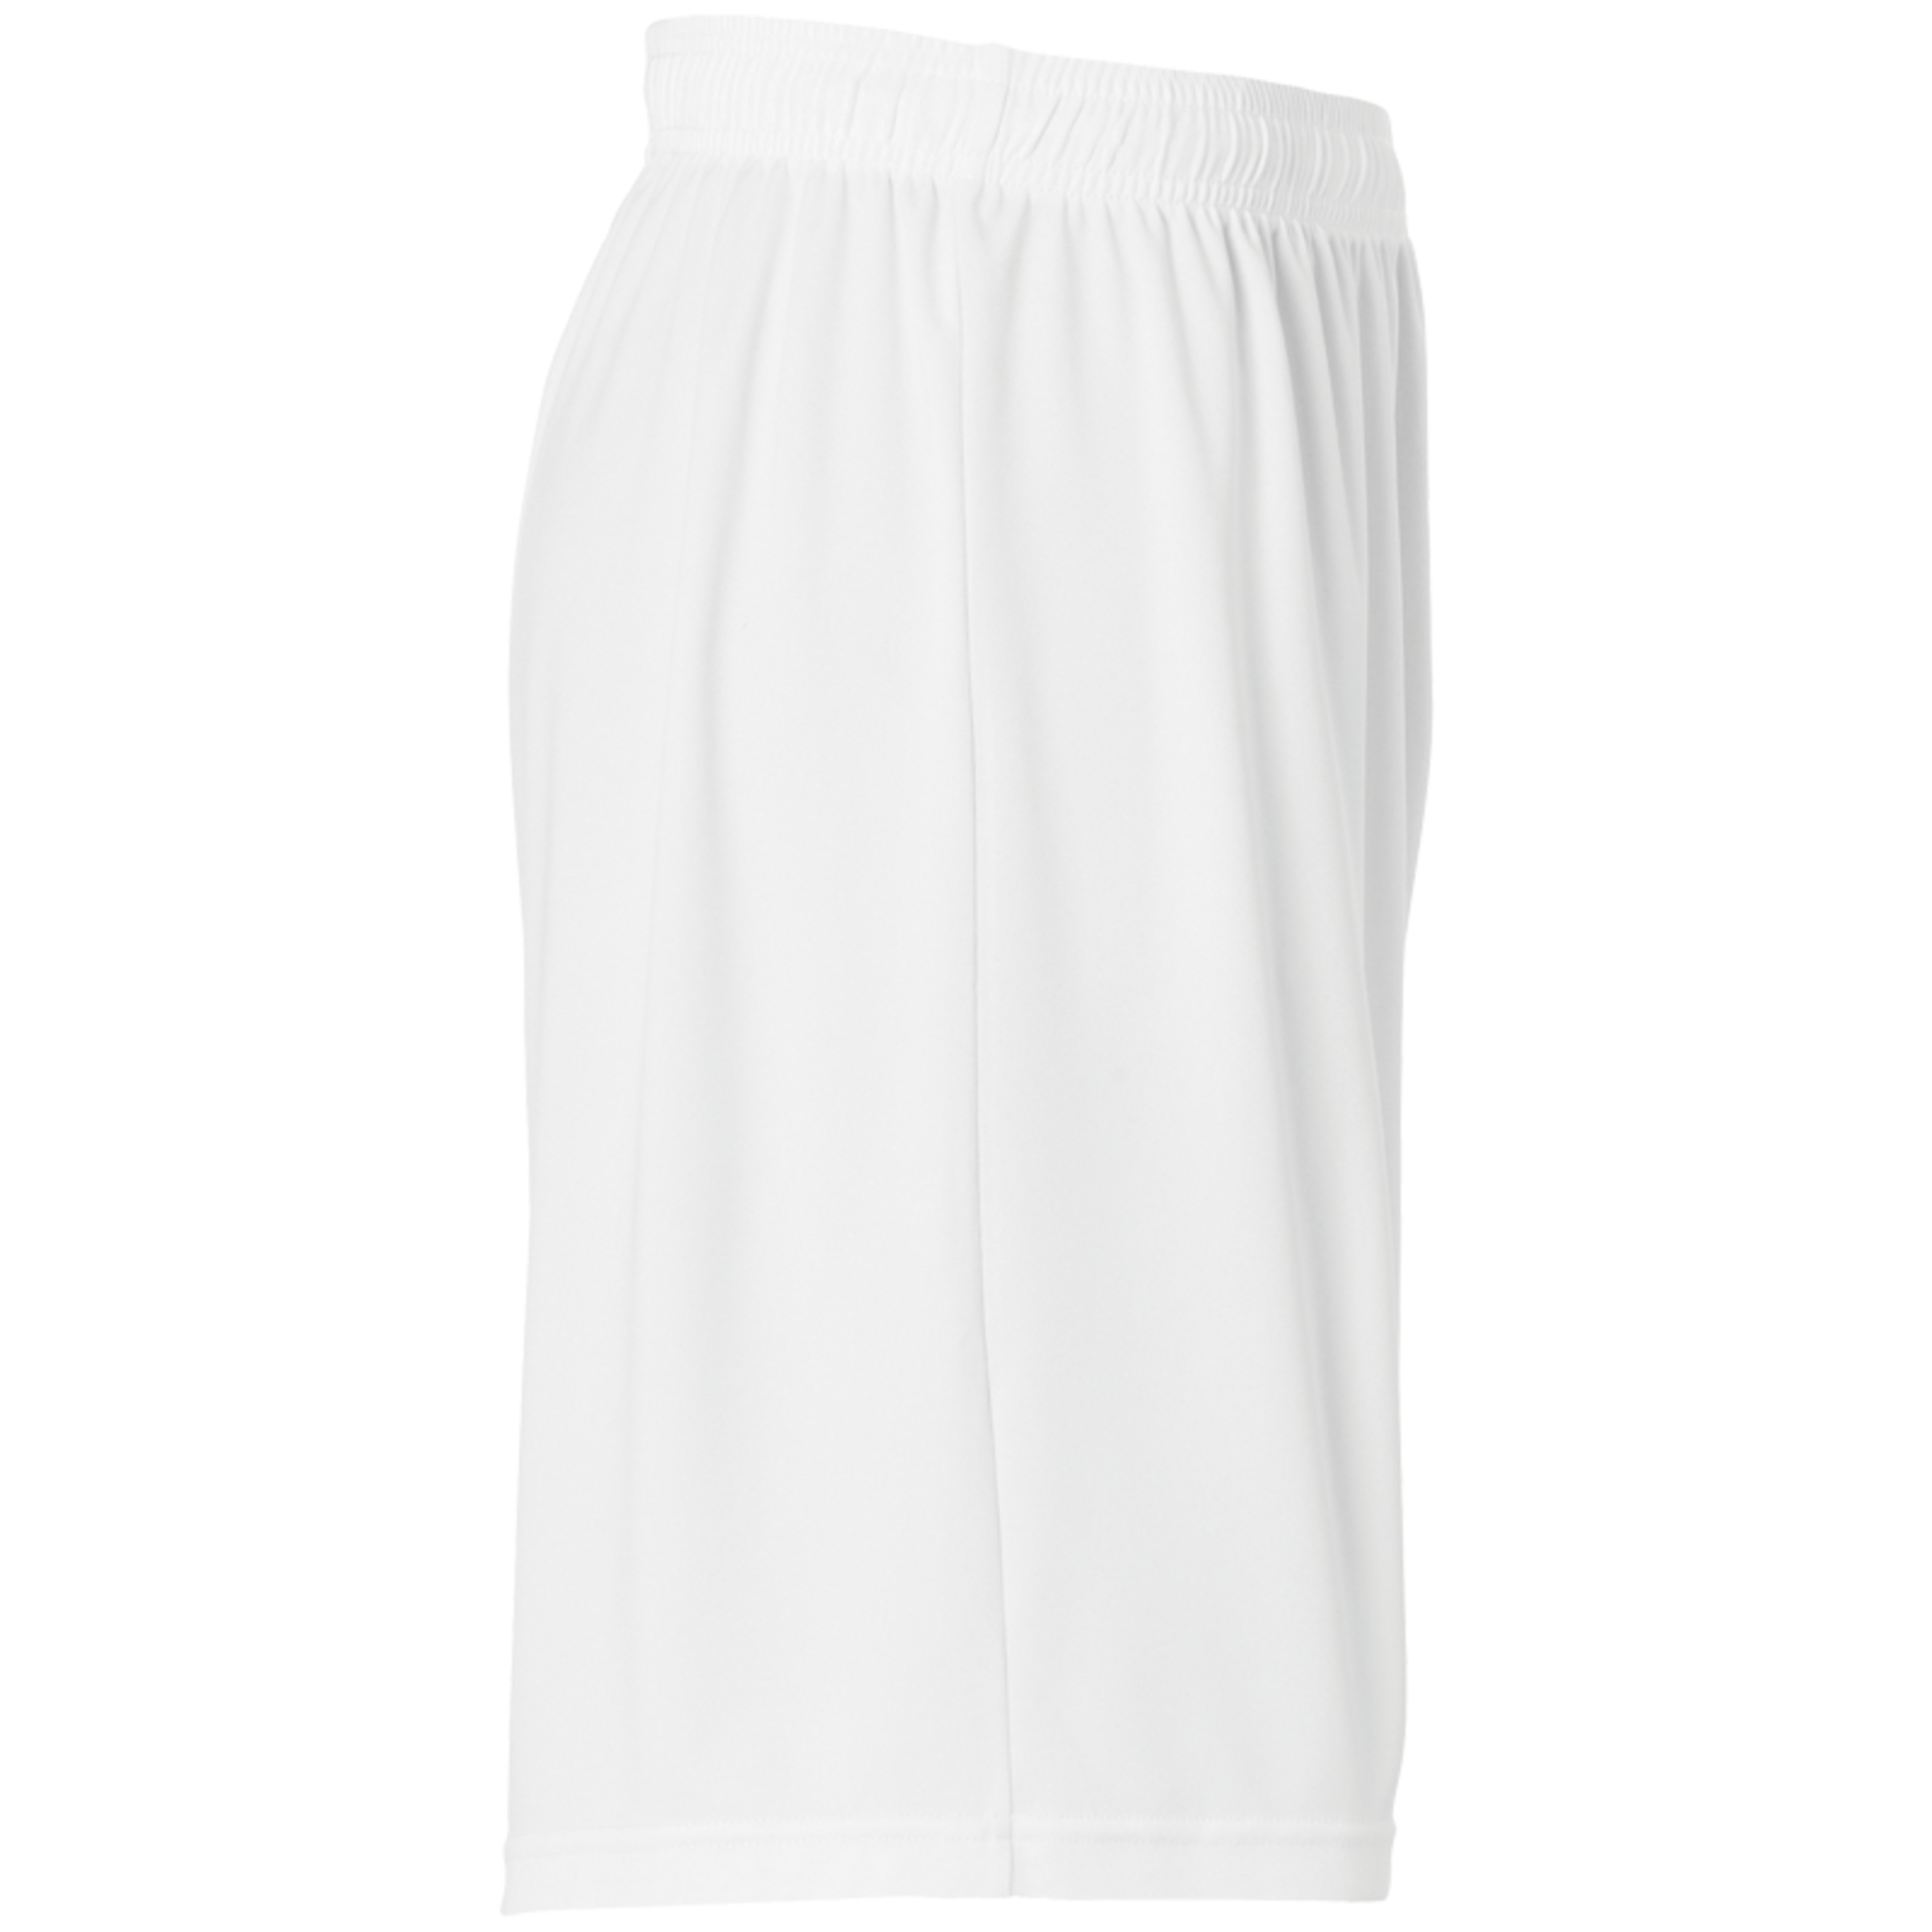 Center Basic Shorts Without Slip White Uhlsport